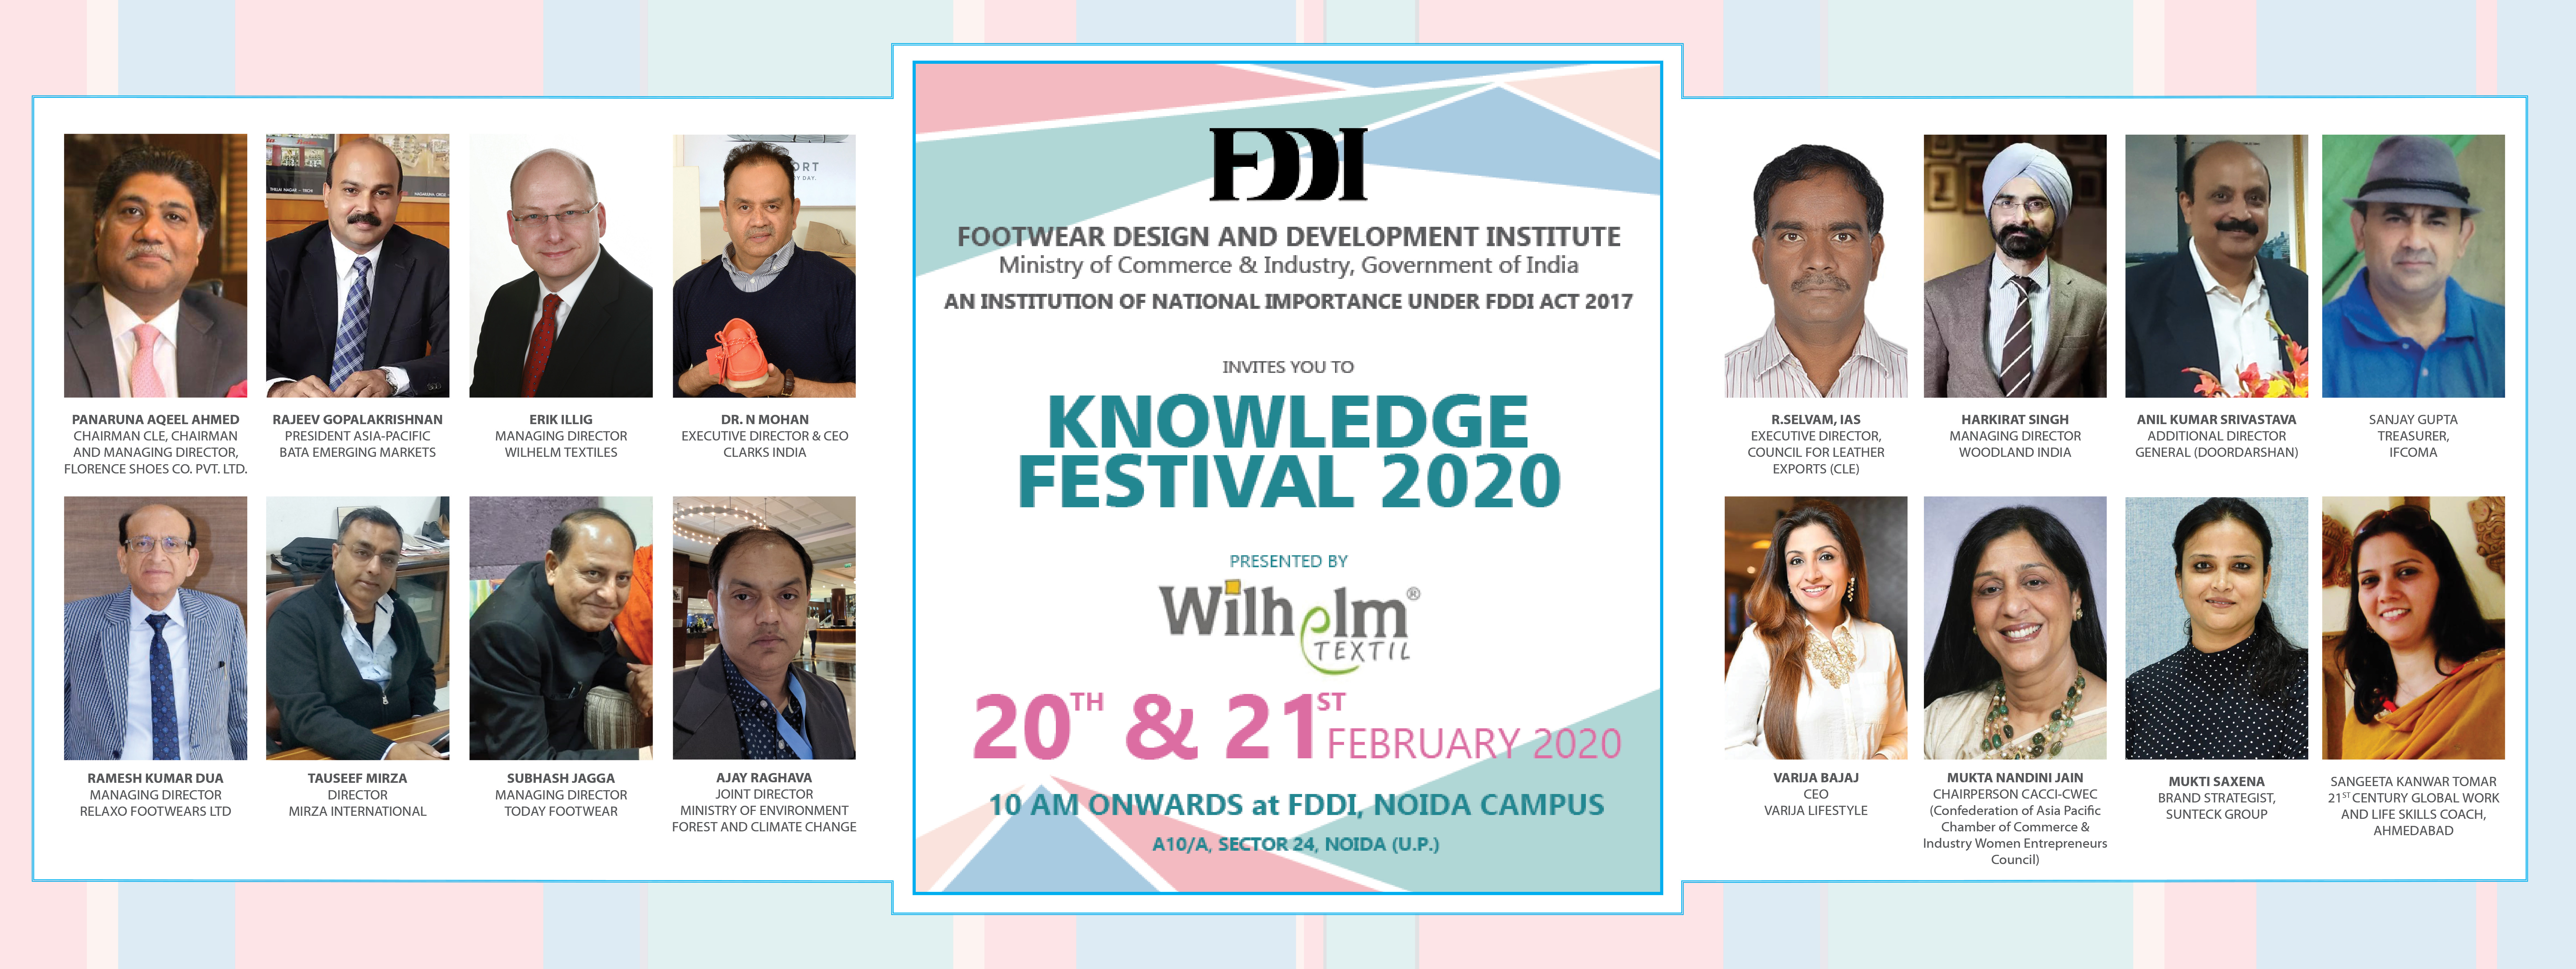 FDDIKnowledge Festival 2020